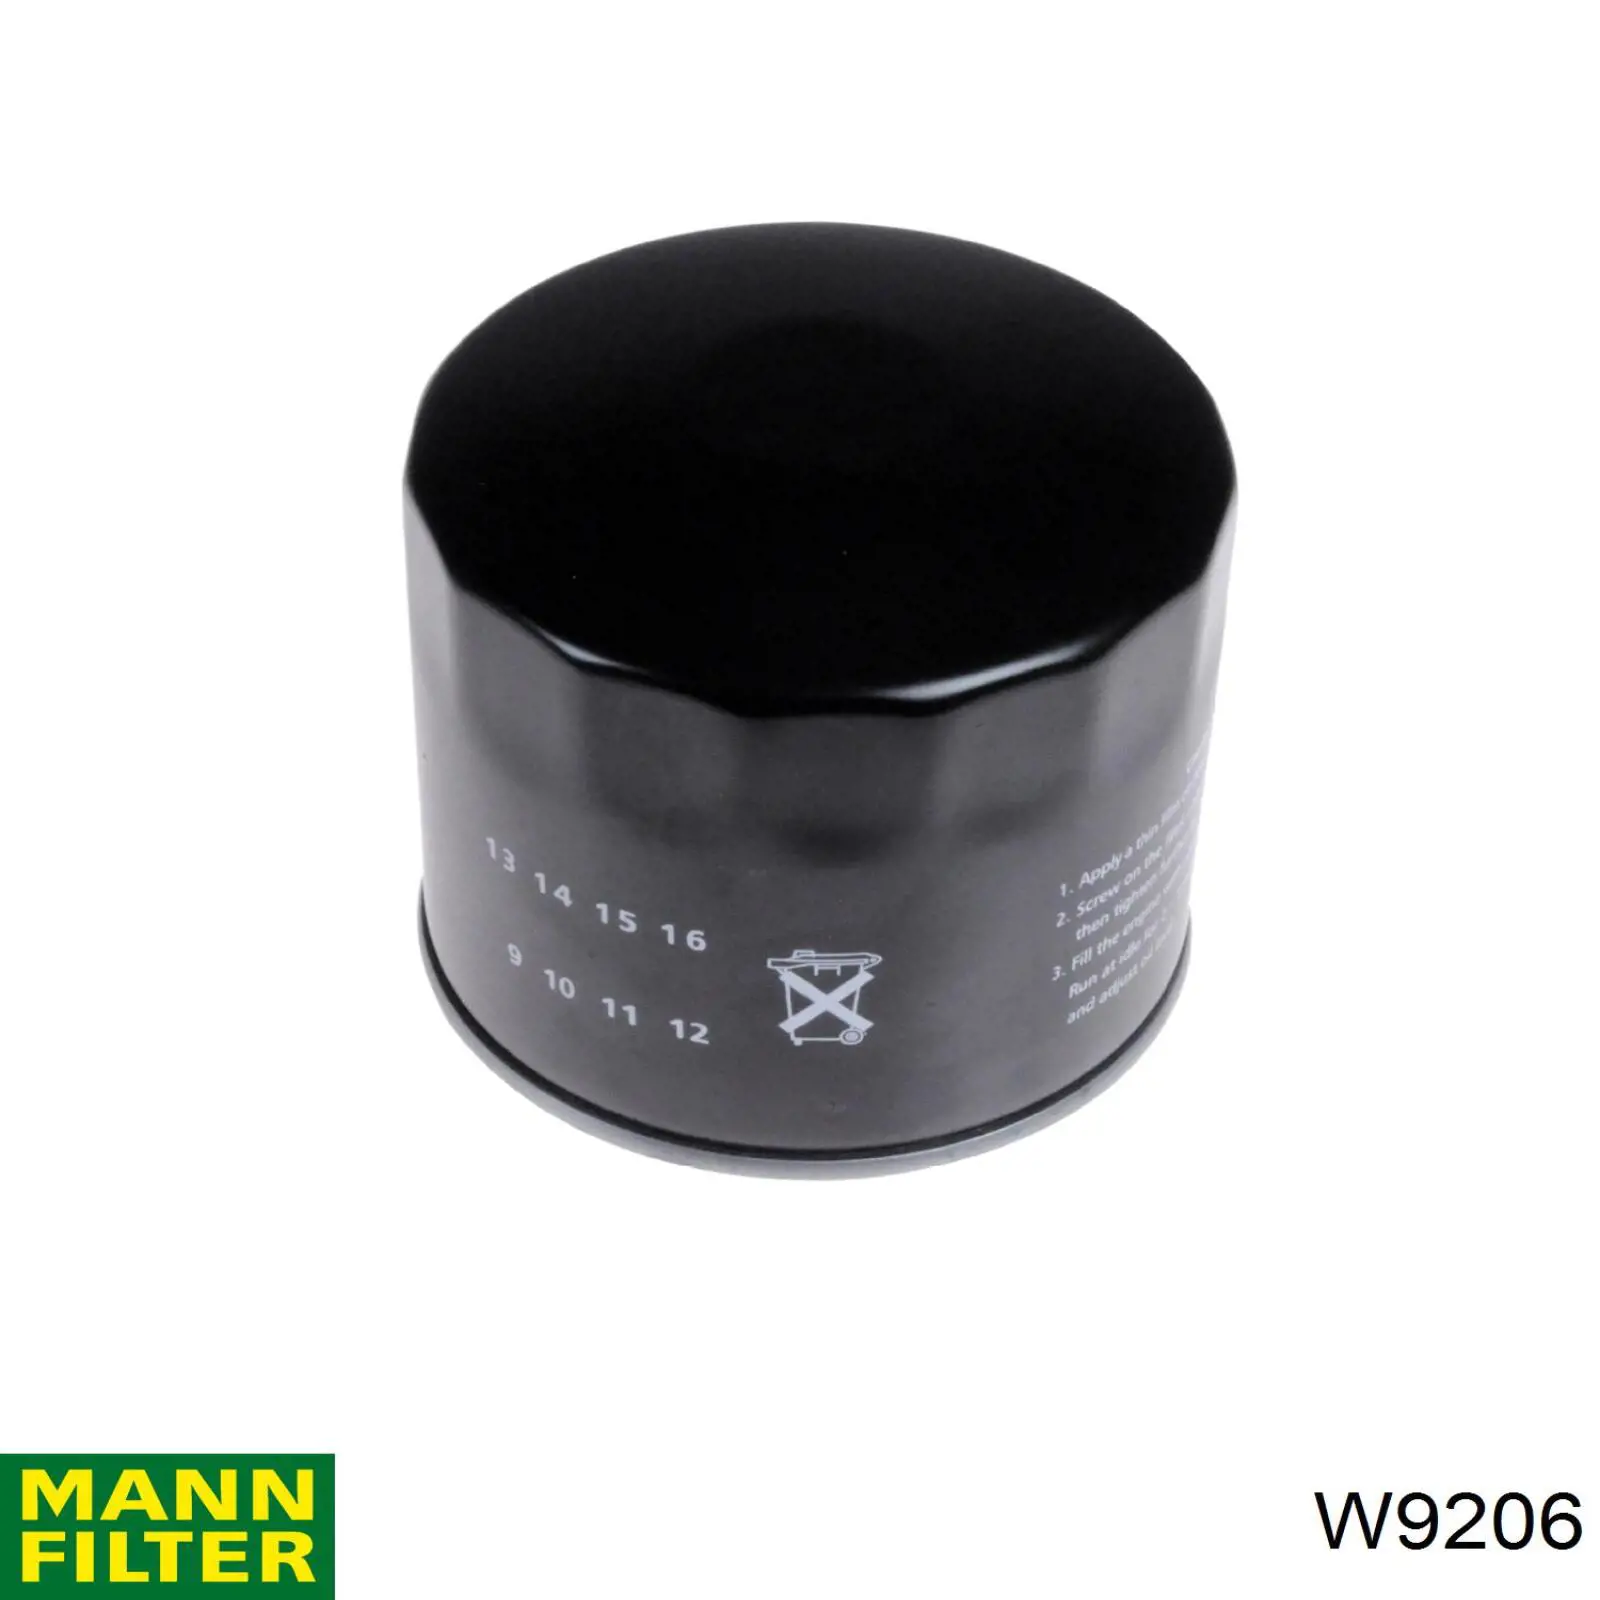 Filtro de aceite W9206 Mann-Filter